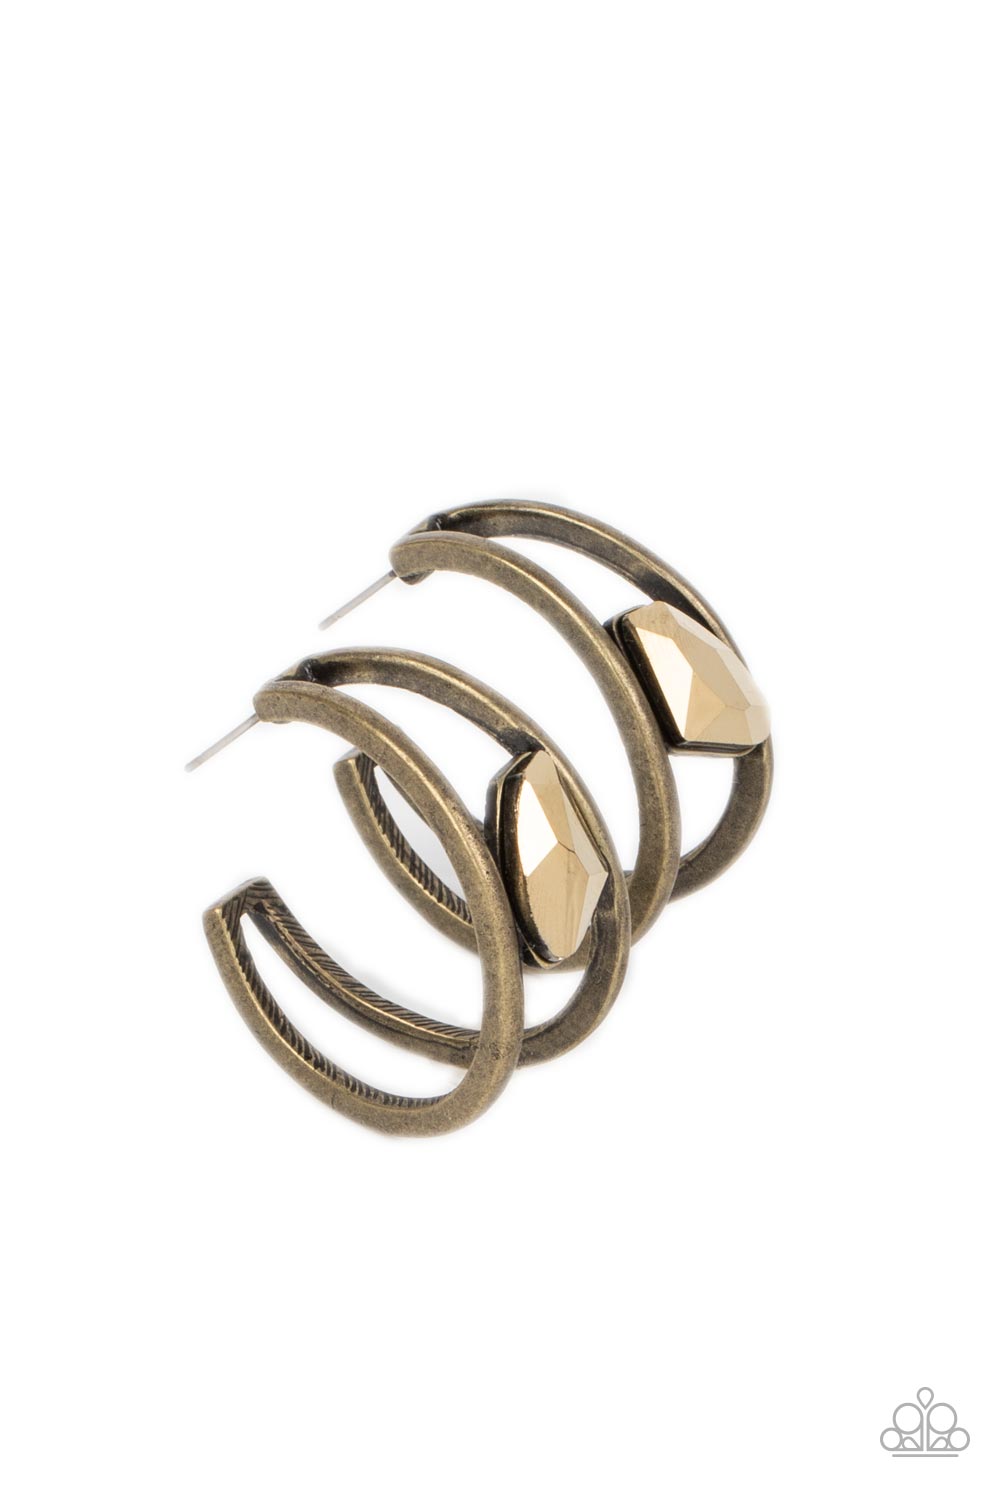 Unrefined Reverie - Brass Earrings- Paparazzi Accessories - Alies Bling Bar